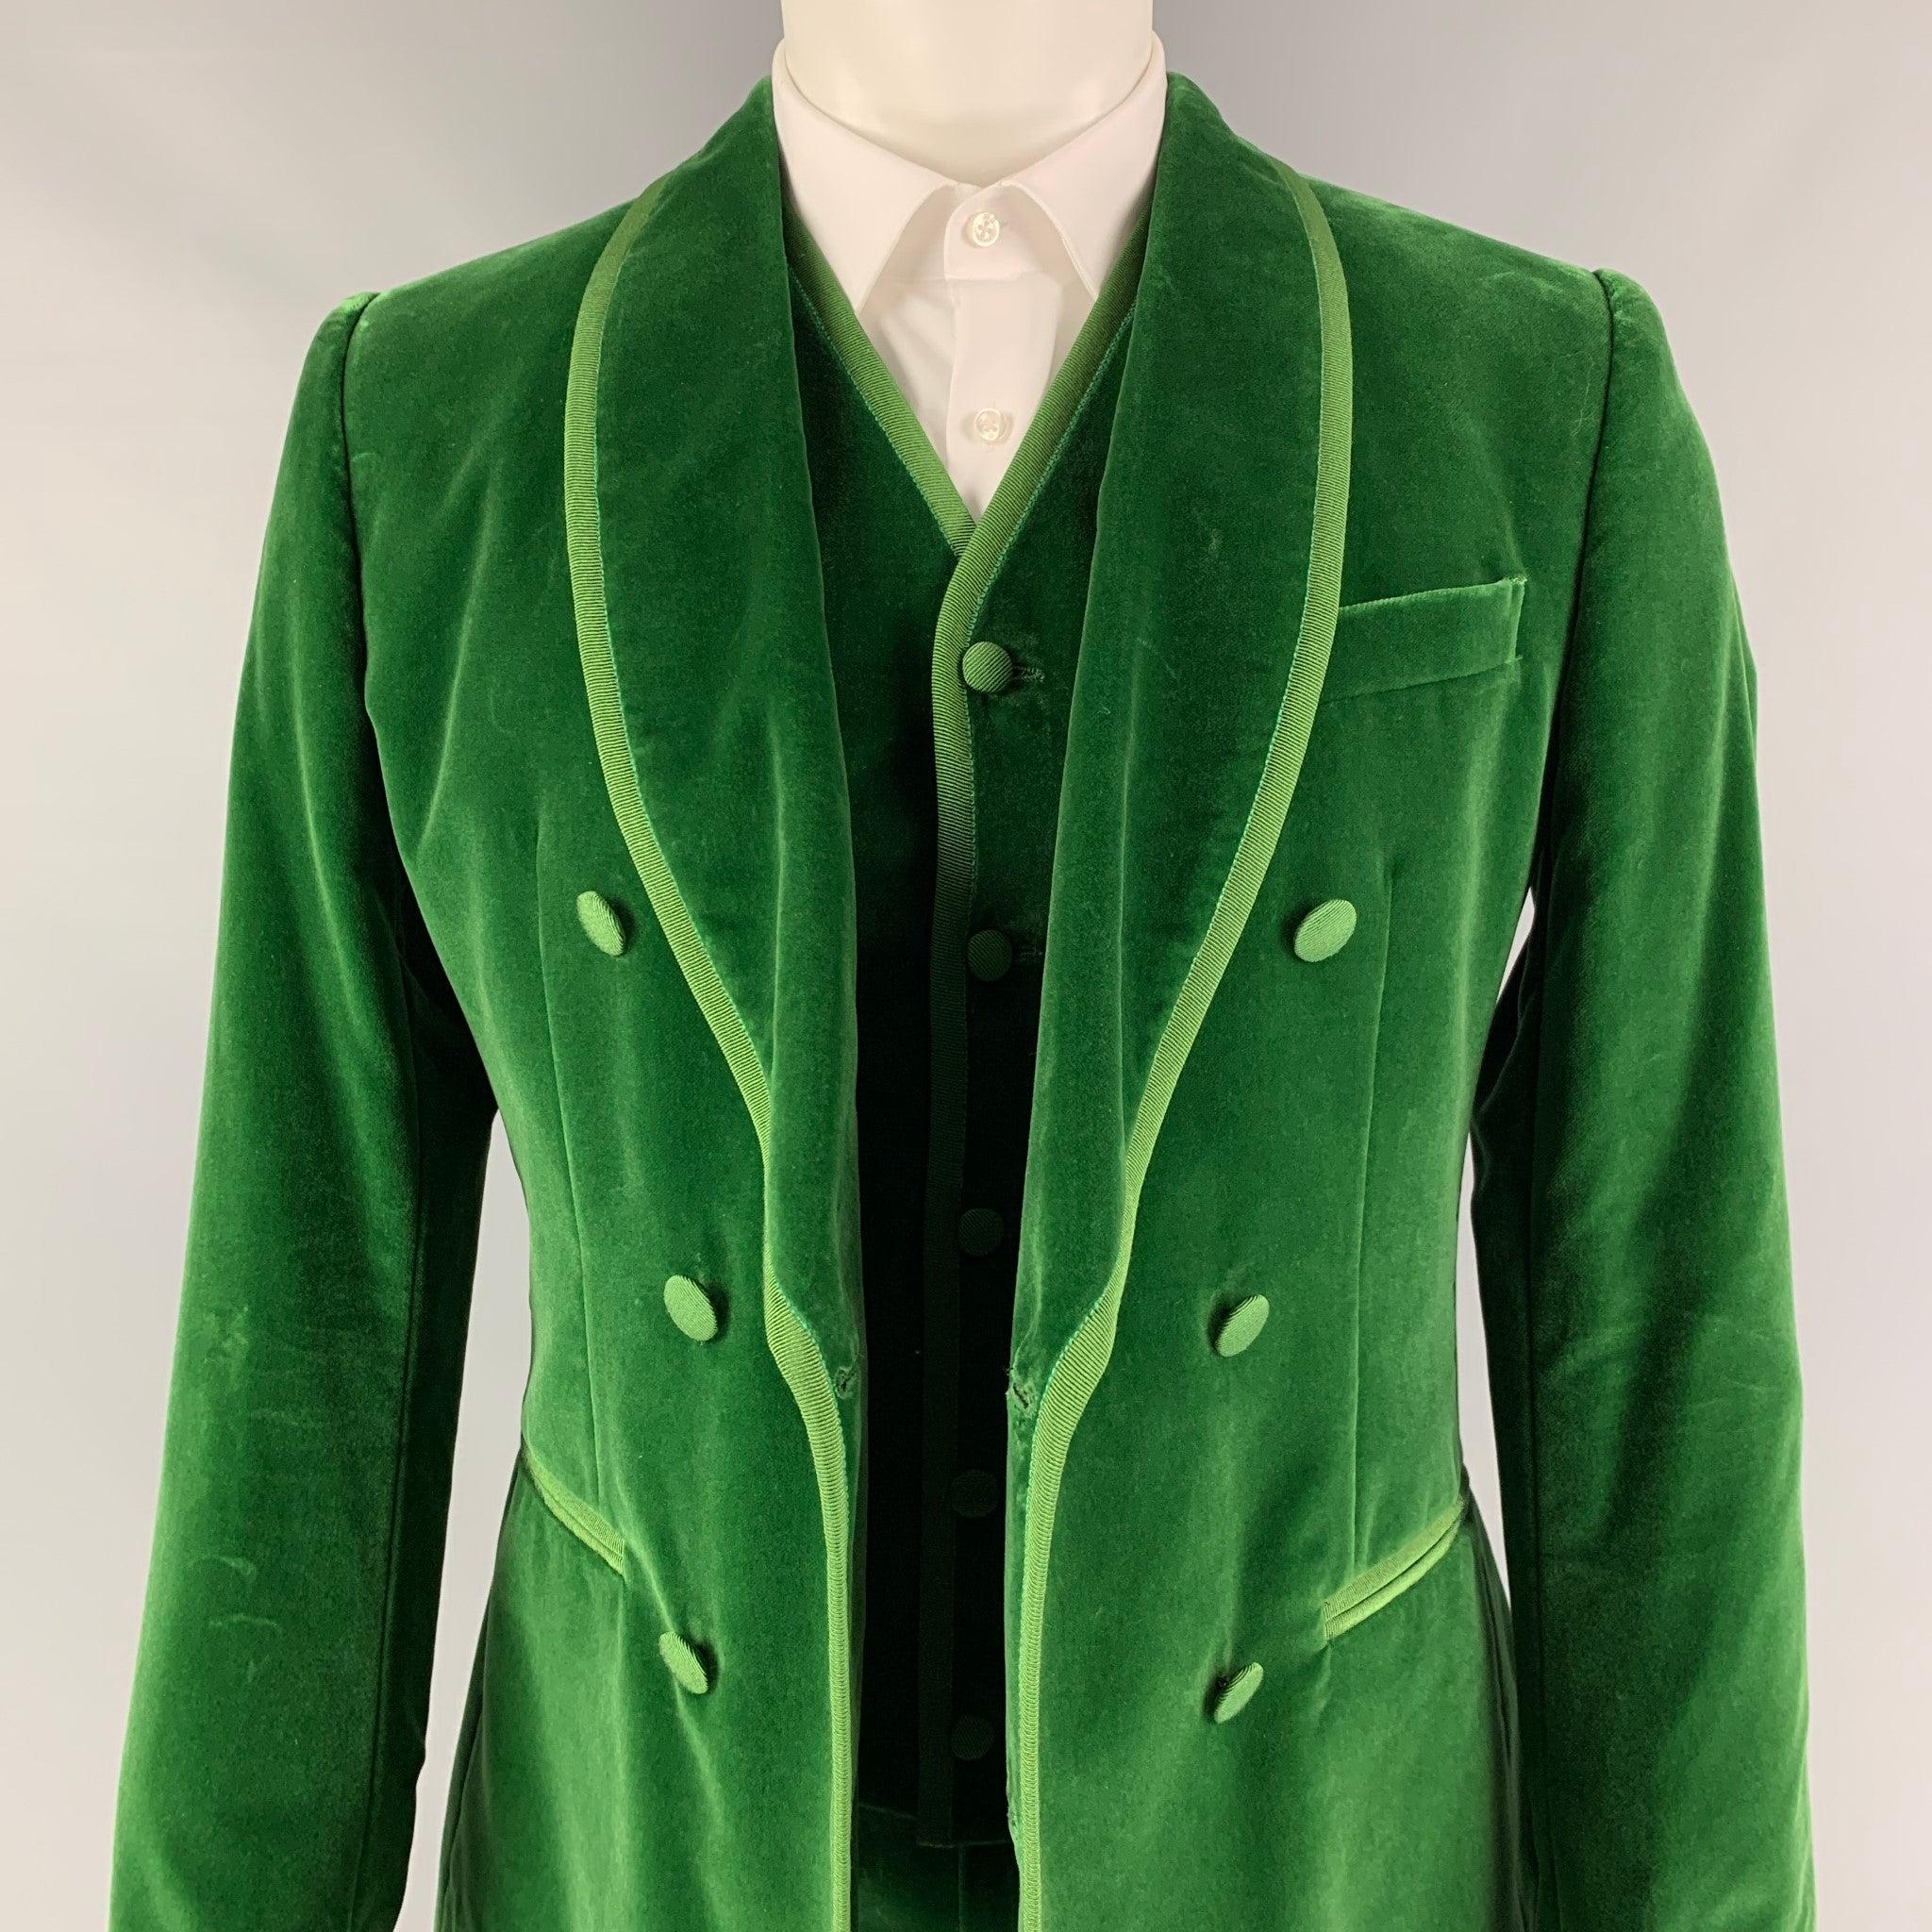 DOLCE & GABBANA 3 pièces
Le costume est en velours vert avec une doublure complète et comprend un manteau de sport boutonné à une seule poitrine avec un col châle et un pantalon à devant plat assorti. La taille et la longueur des pantalons doivent